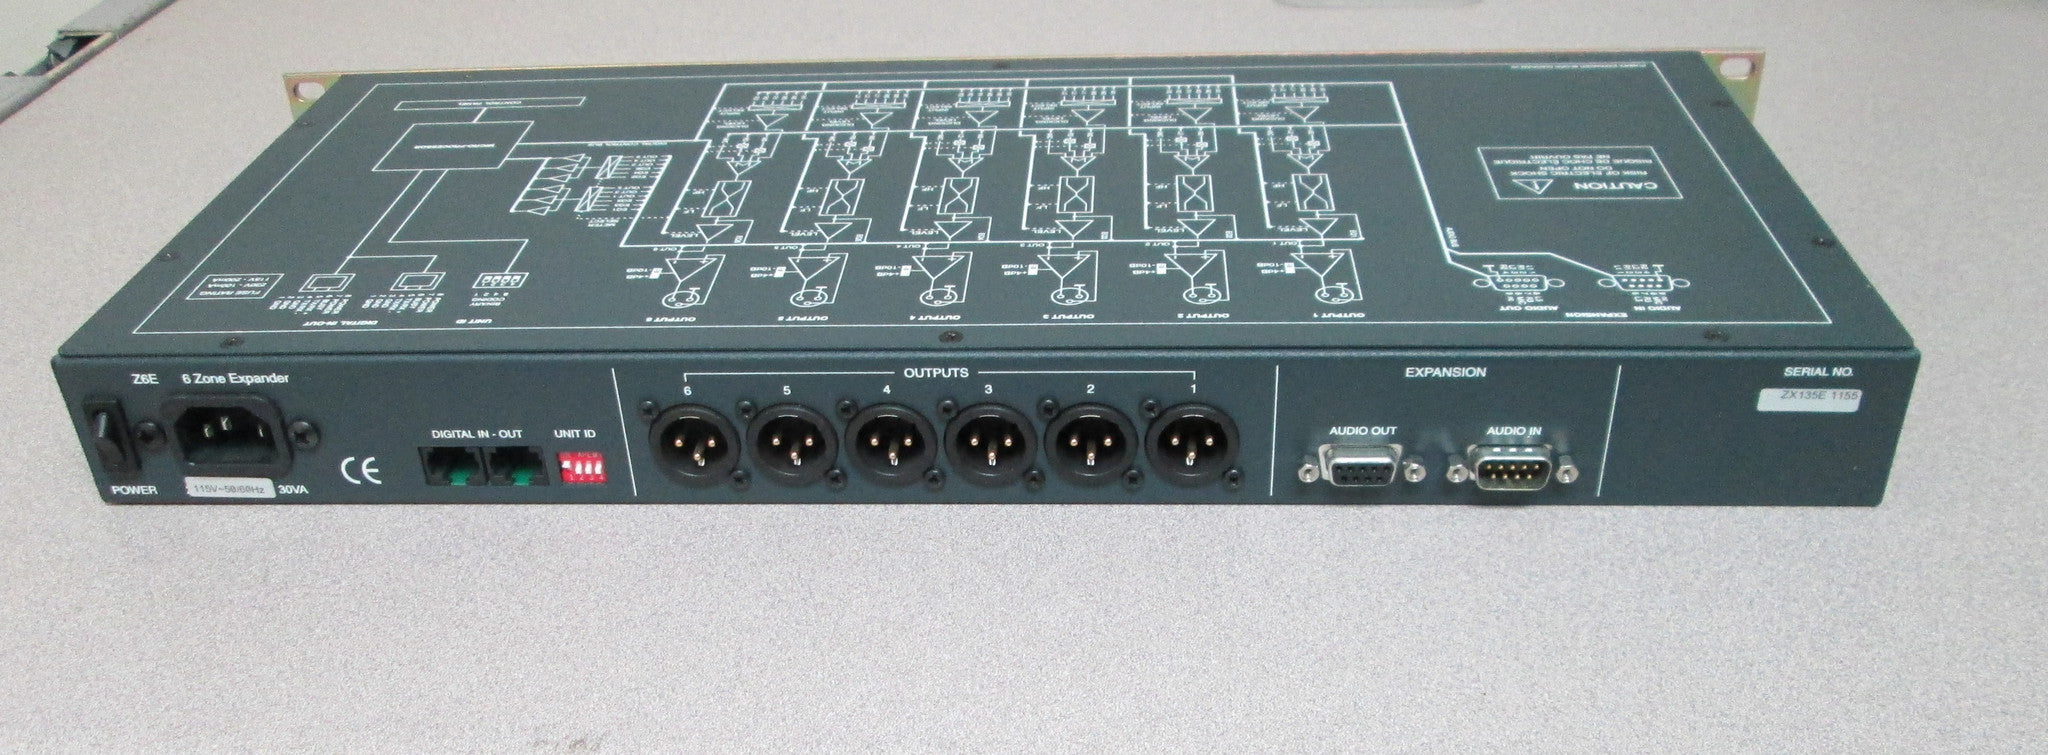 Recording Equipment - LA Audio - LA Audio ZX135E 6 Zone Expander - Professional Audio Design, Inc